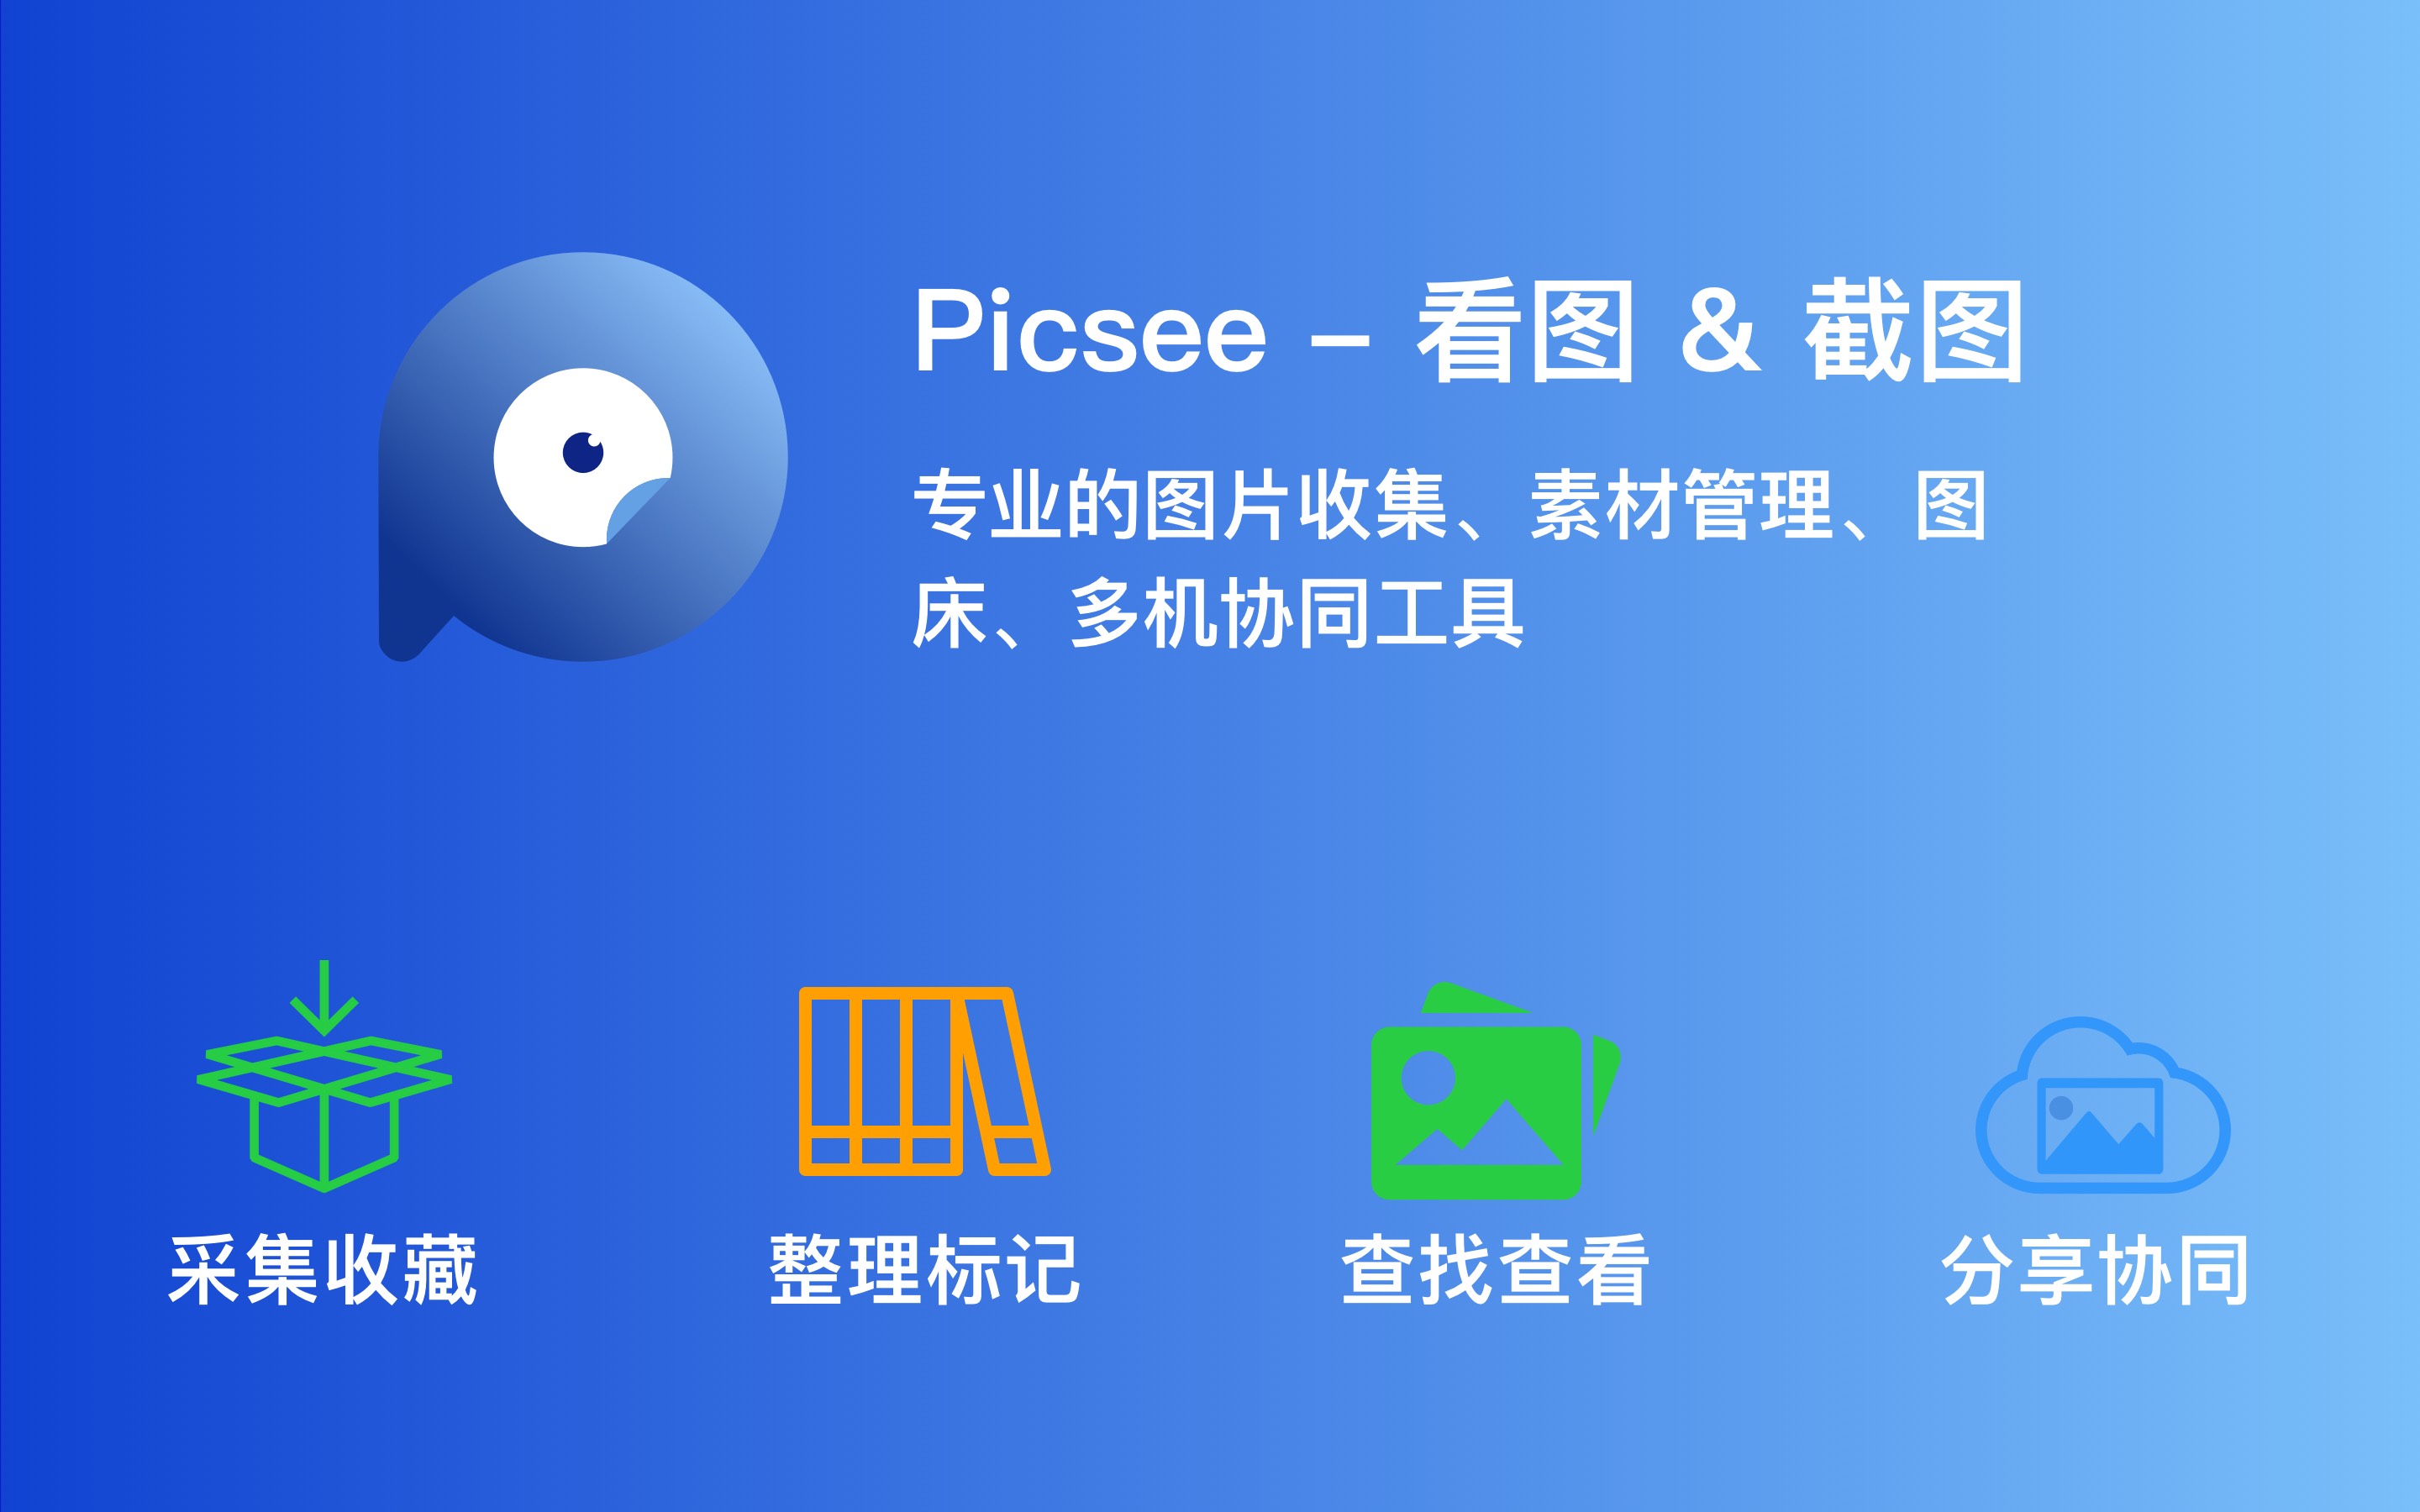 Picsee - 看图 & 图片管理 1.6.9 图片收集照片管理